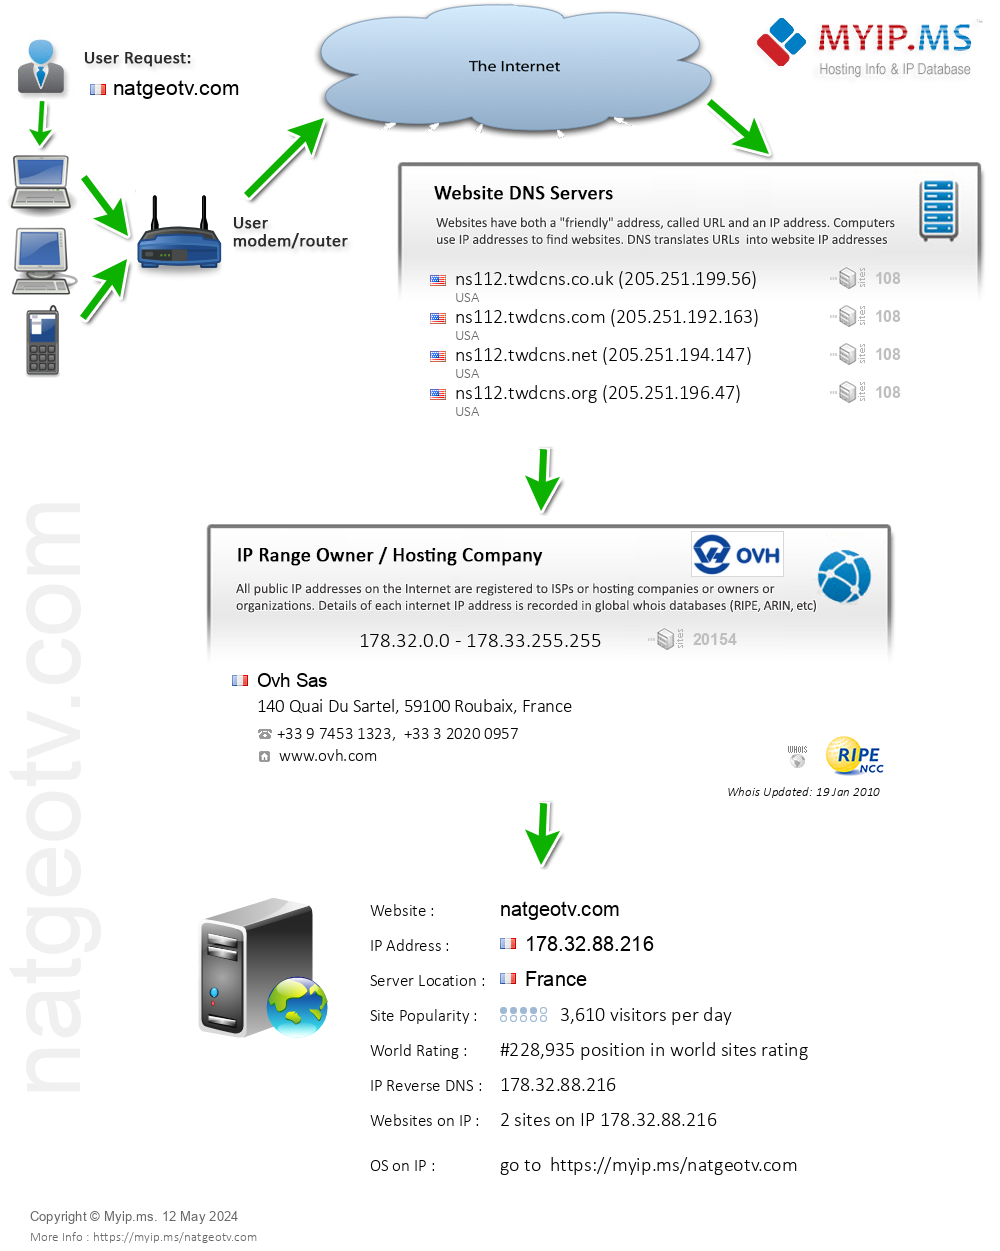 Natgeotv.com - Website Hosting Visual IP Diagram